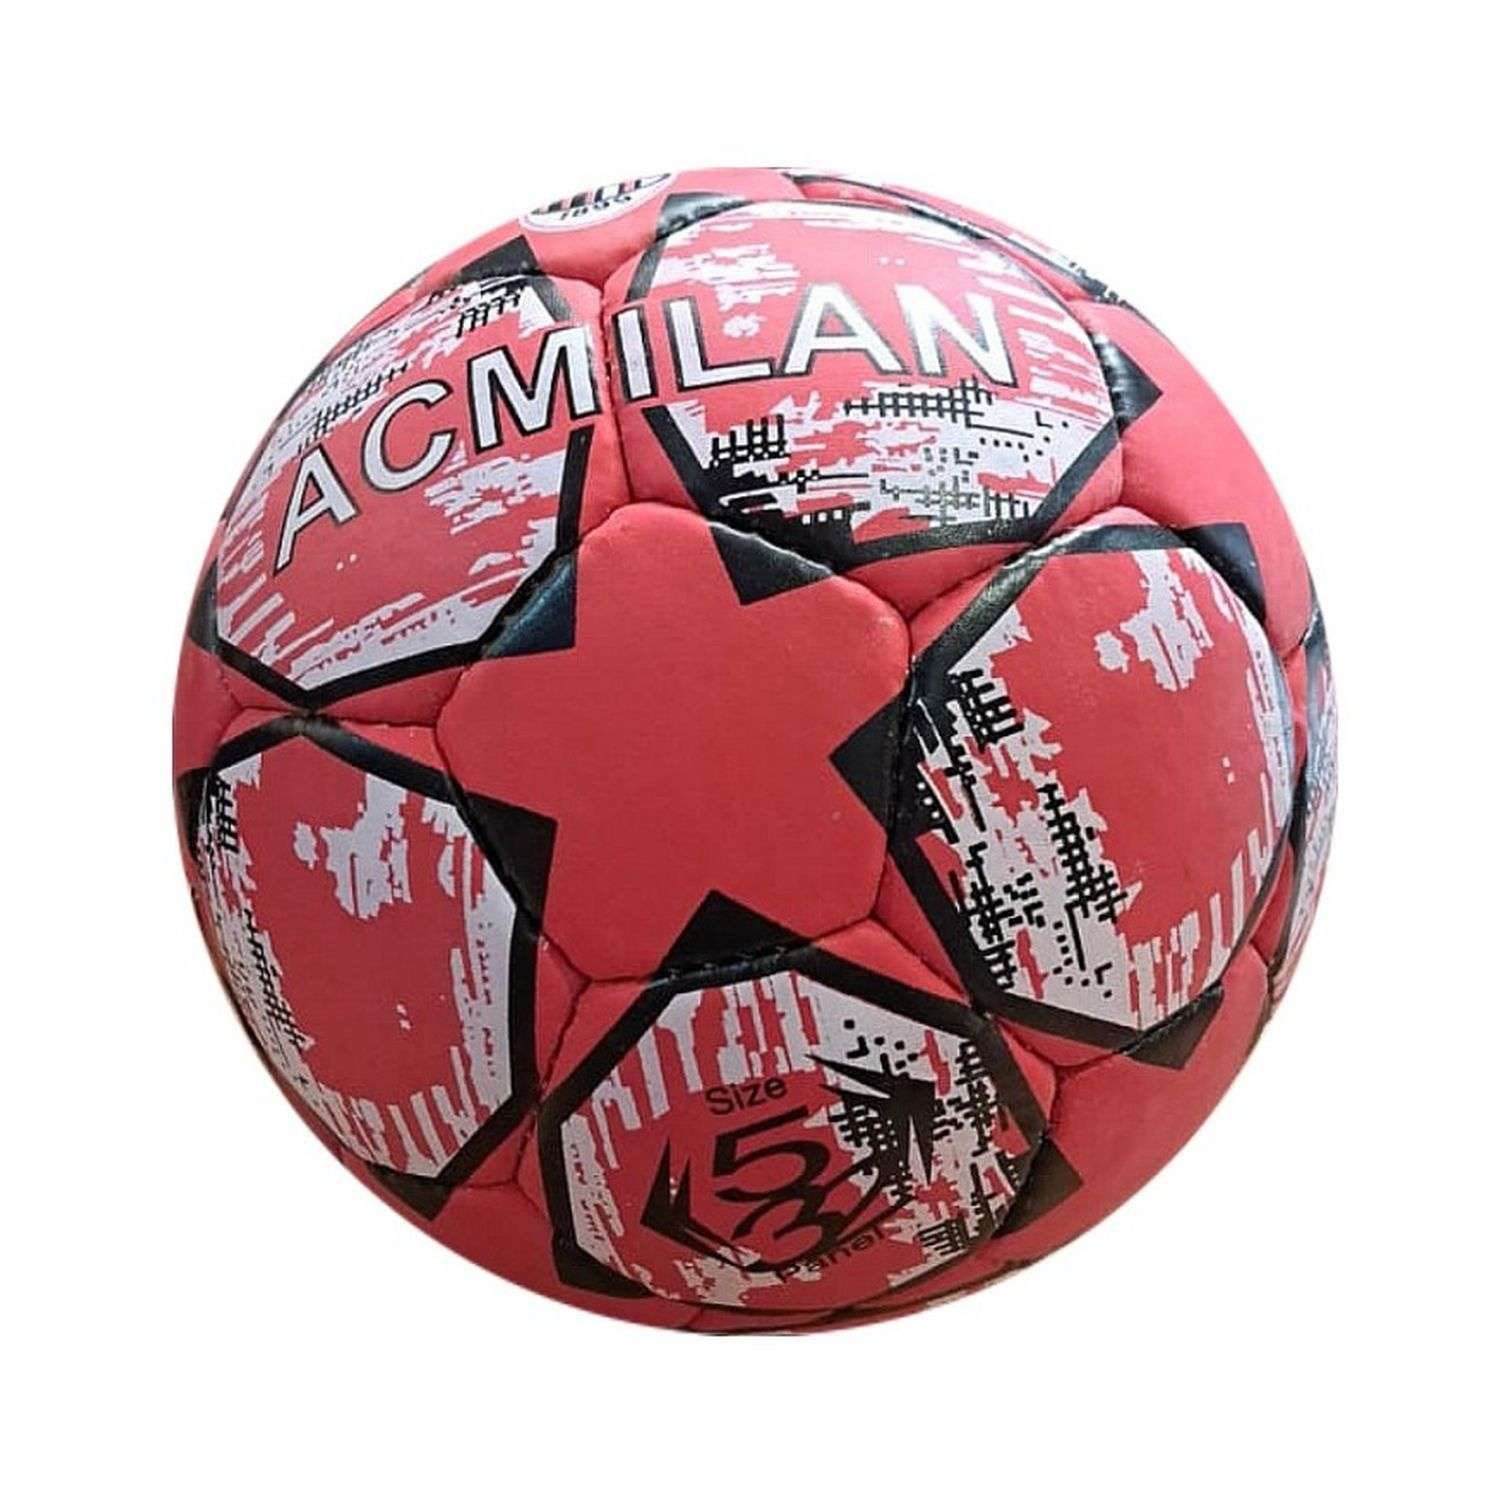 Футбольный мяч Uniglodis с названием клуба Милан - фото 1